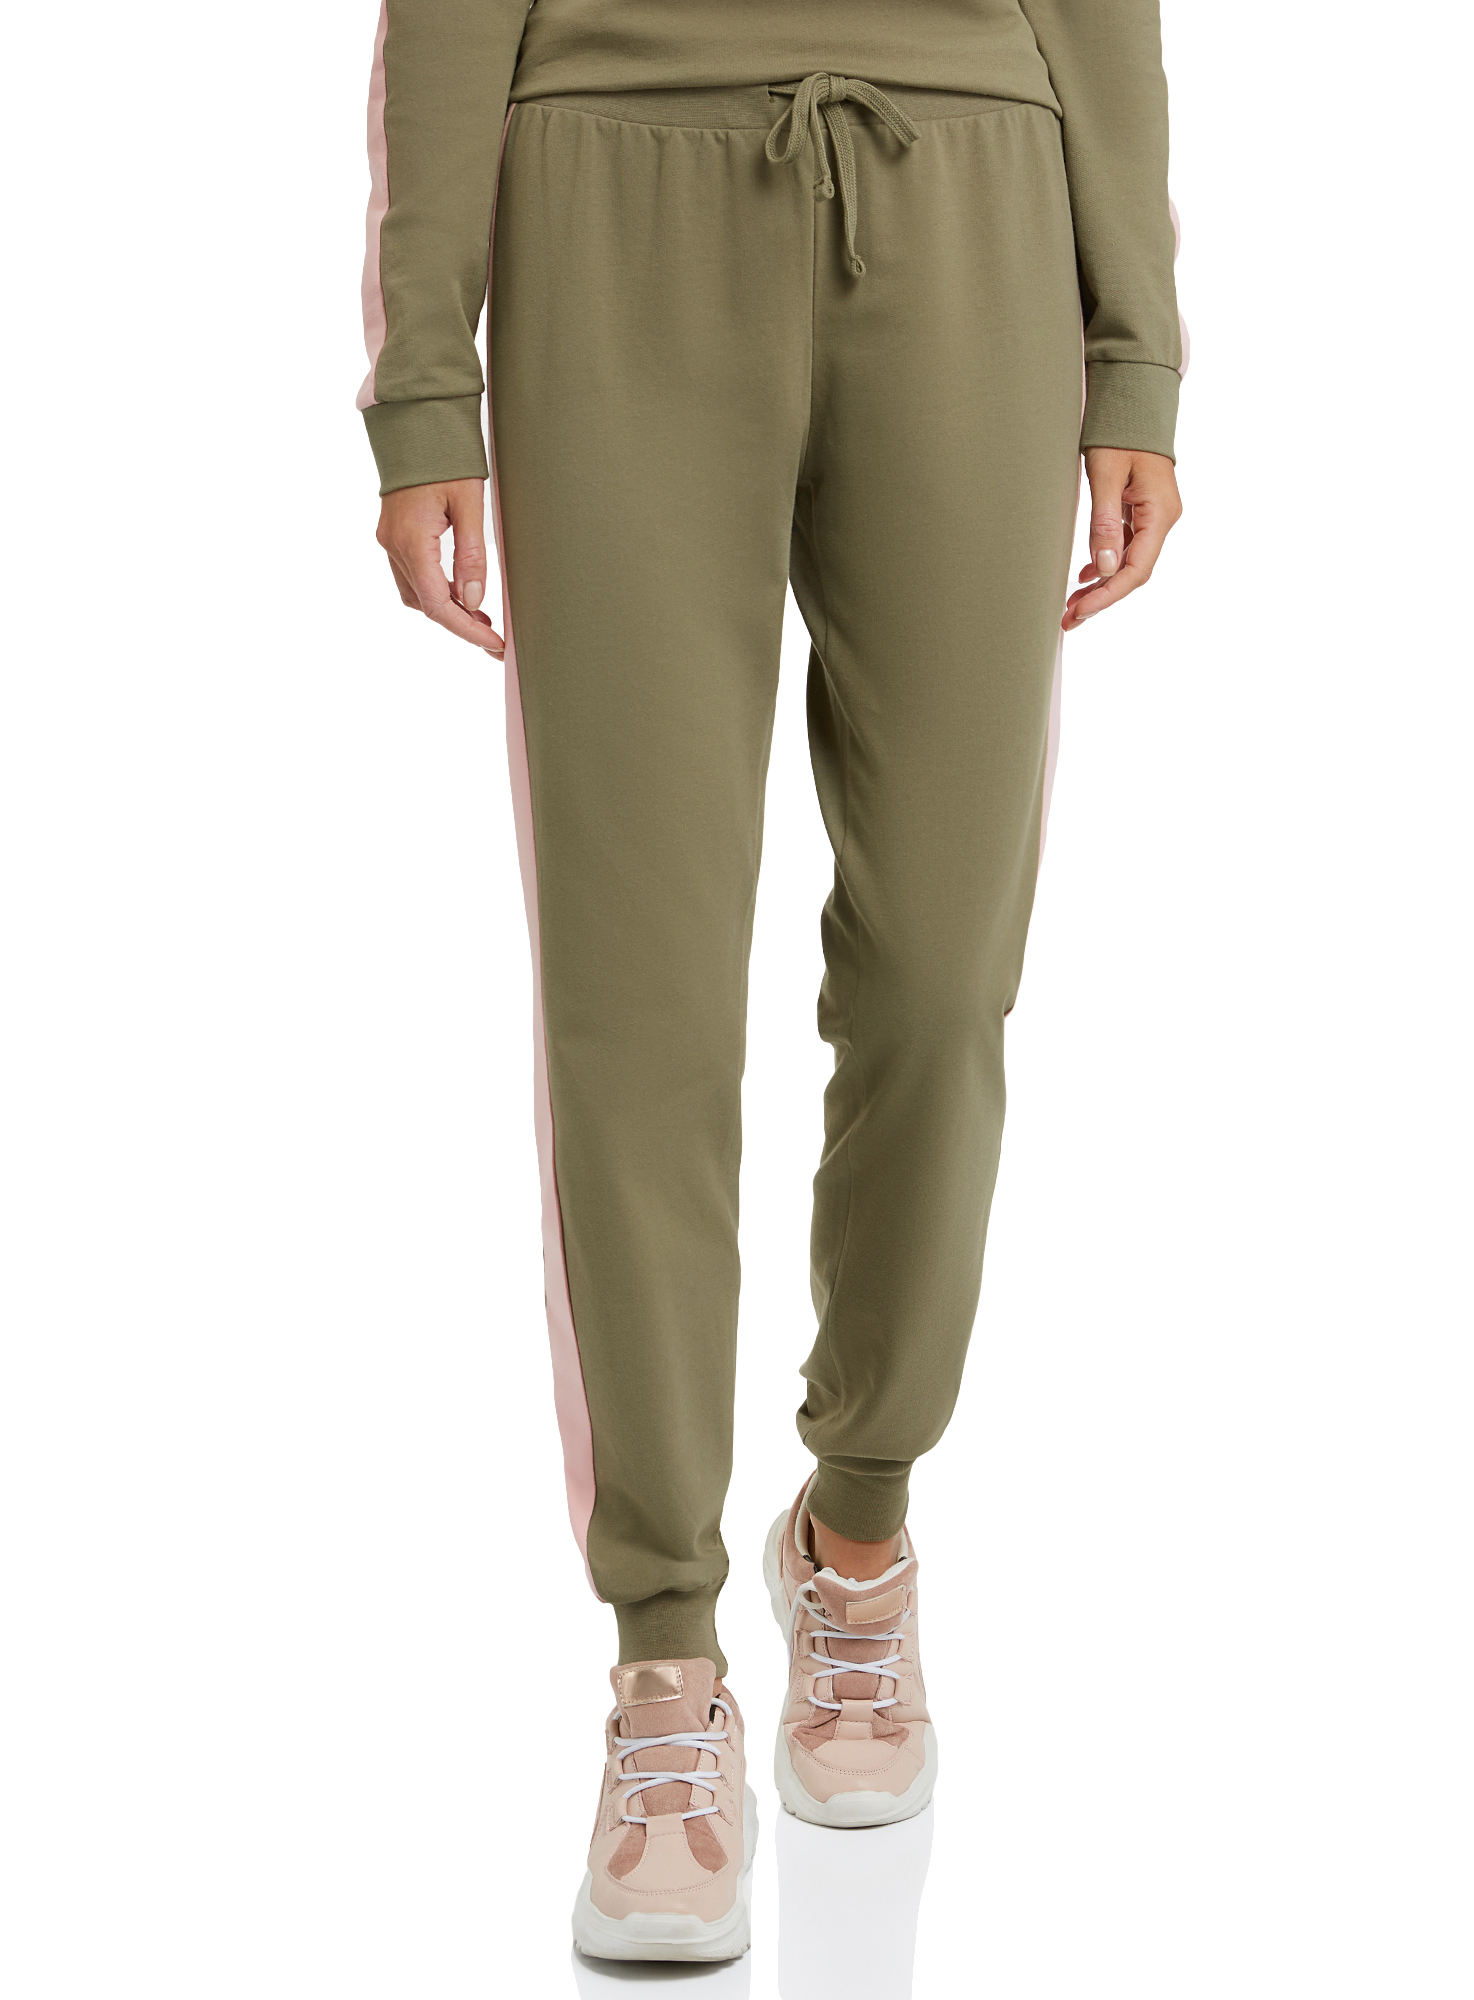 Спортивные брюки женские oodji 16701097B зеленые XL